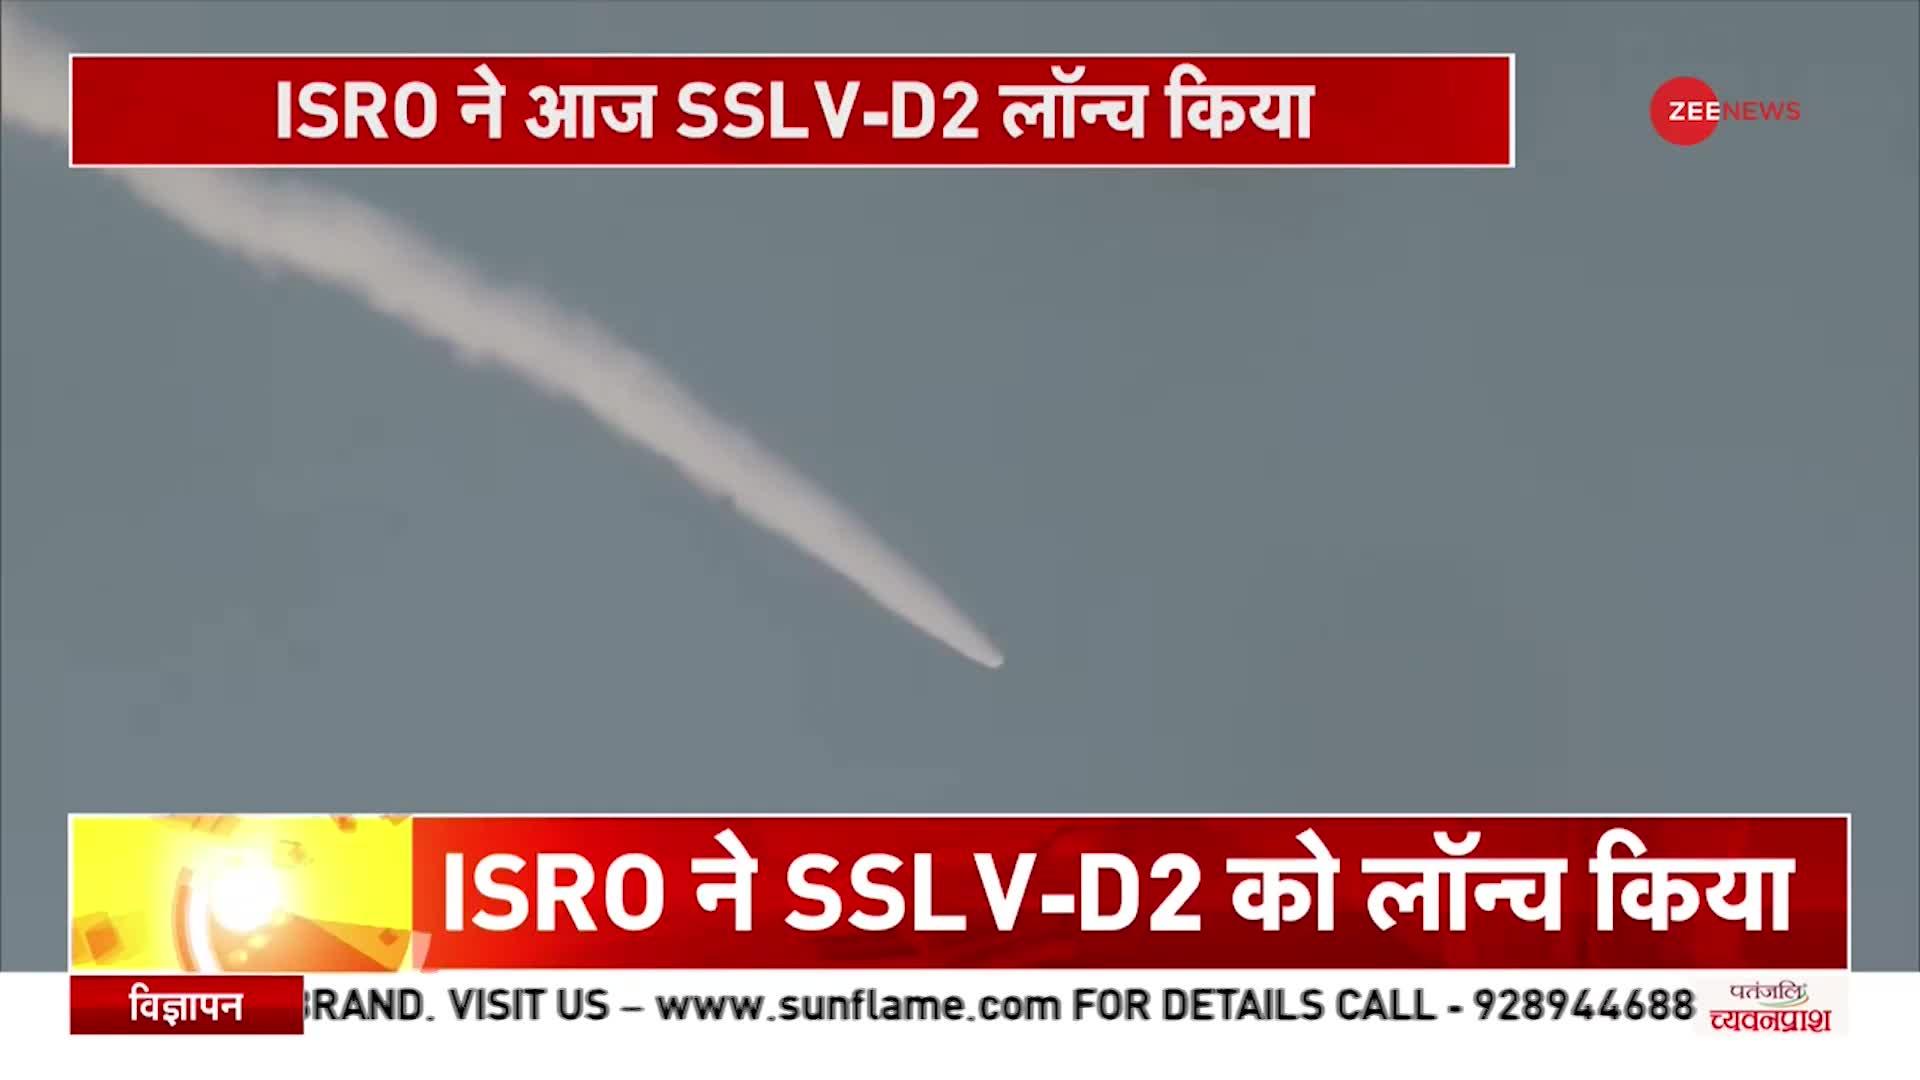 SSLV-D2 Launch: Andhra Pradesh के Sriharikota में ISRO ने लॉन्च किया एसएसएलवी- डी2